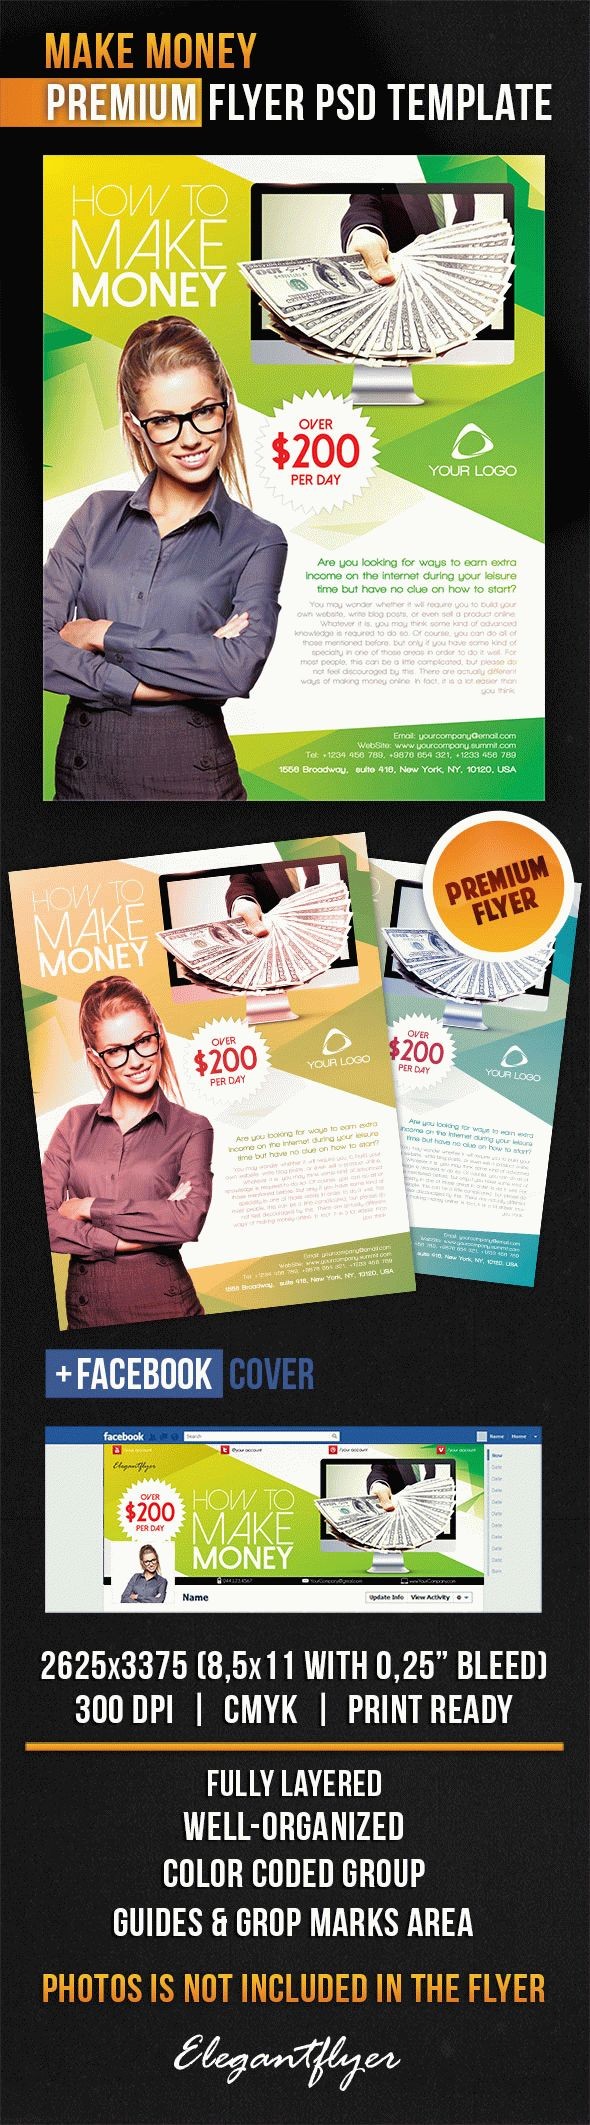 Make Money Flyer by ElegantFlyer